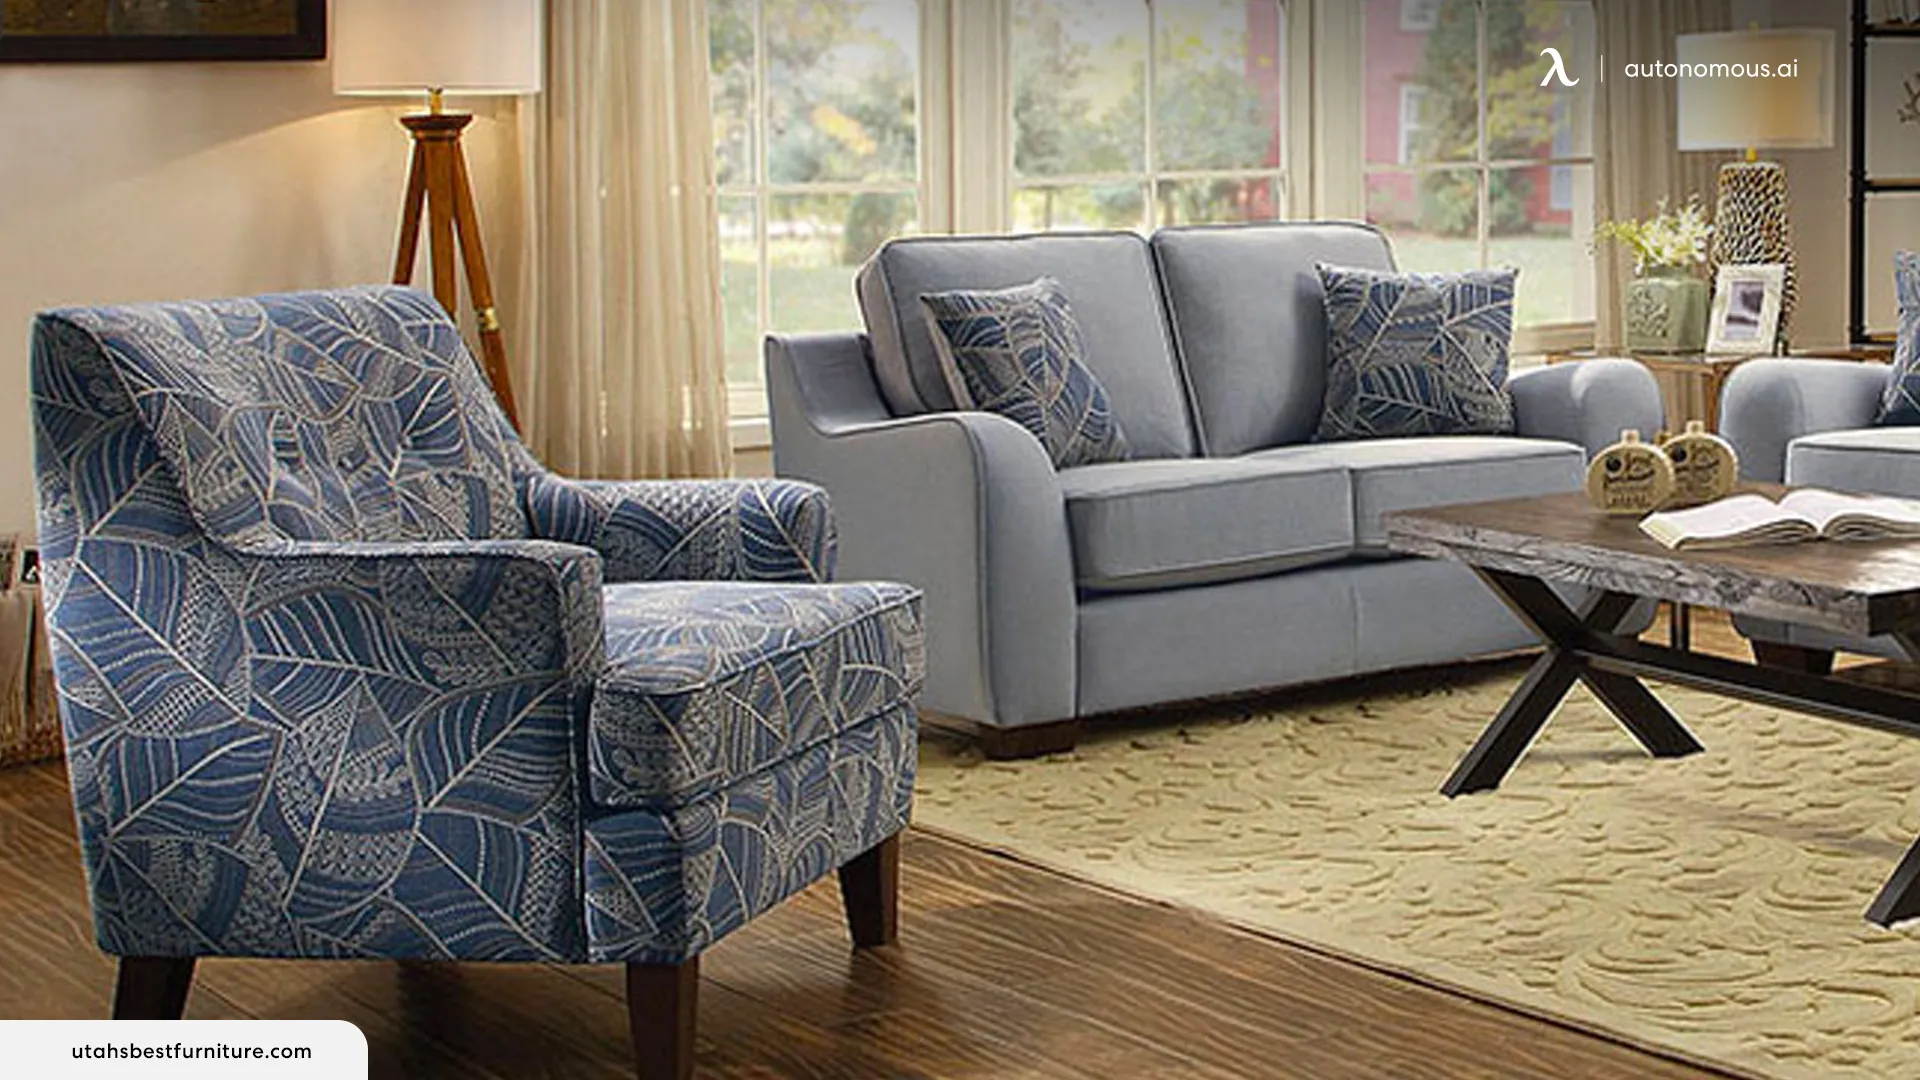 Utah's Best Furniture and Design - Luxury Furniture Boutique